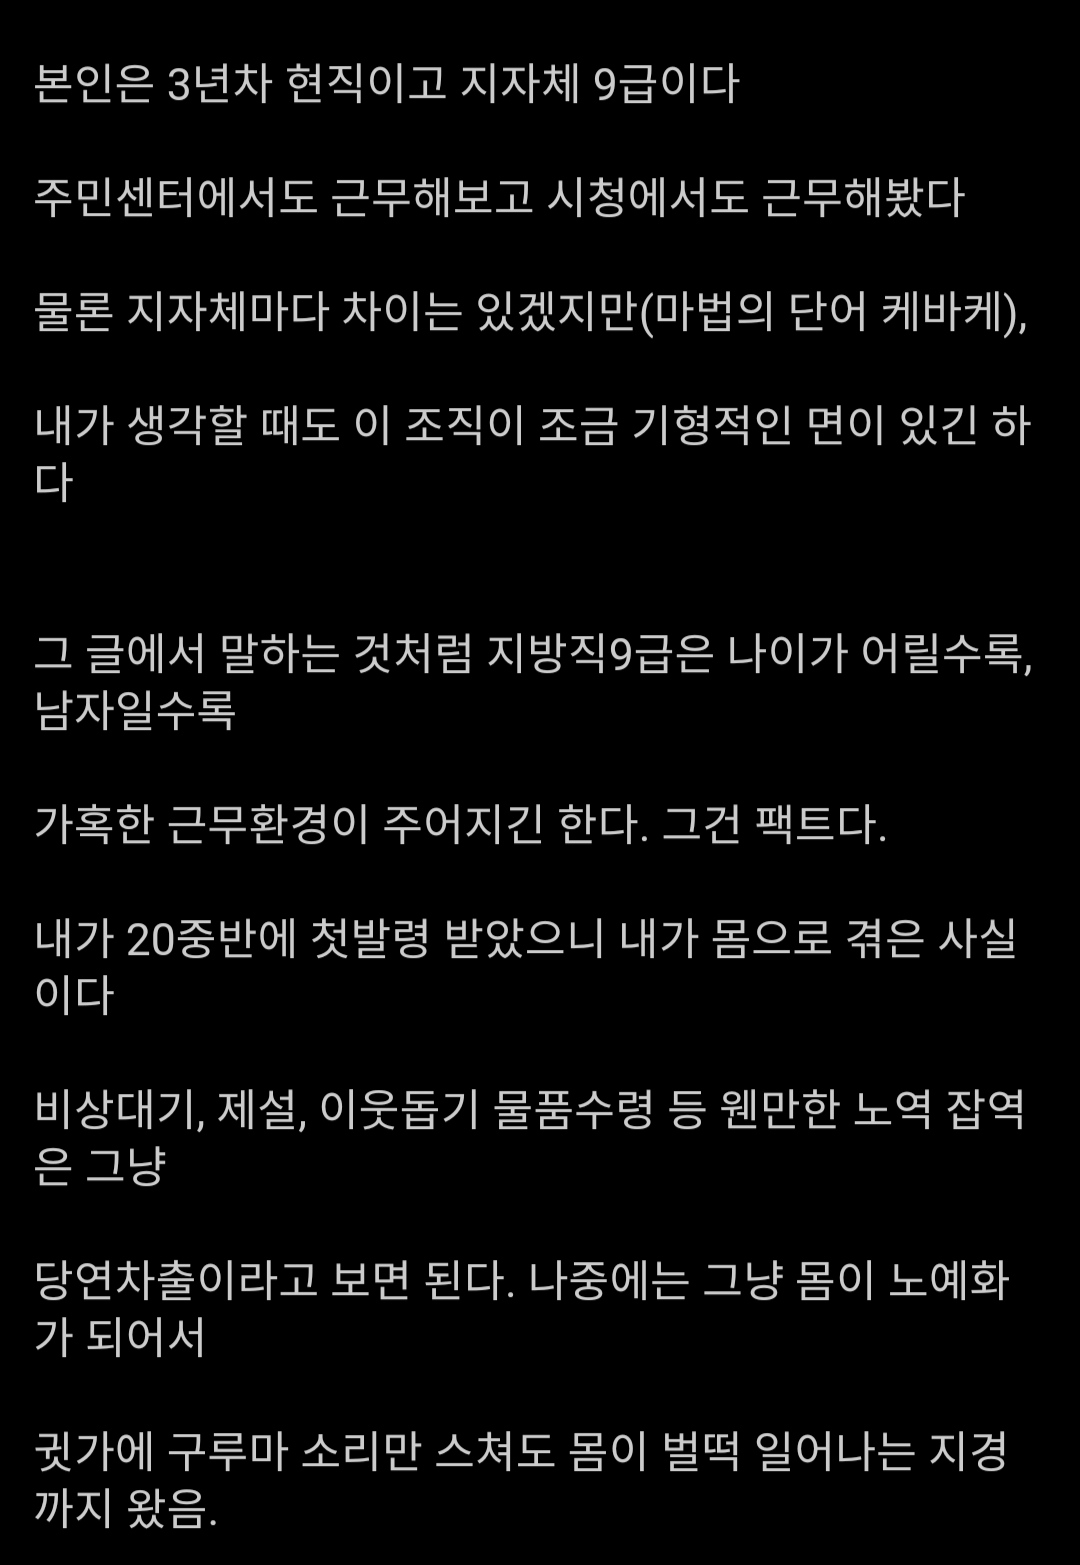 "본인 9급 현직인데 소신발언함".jpg